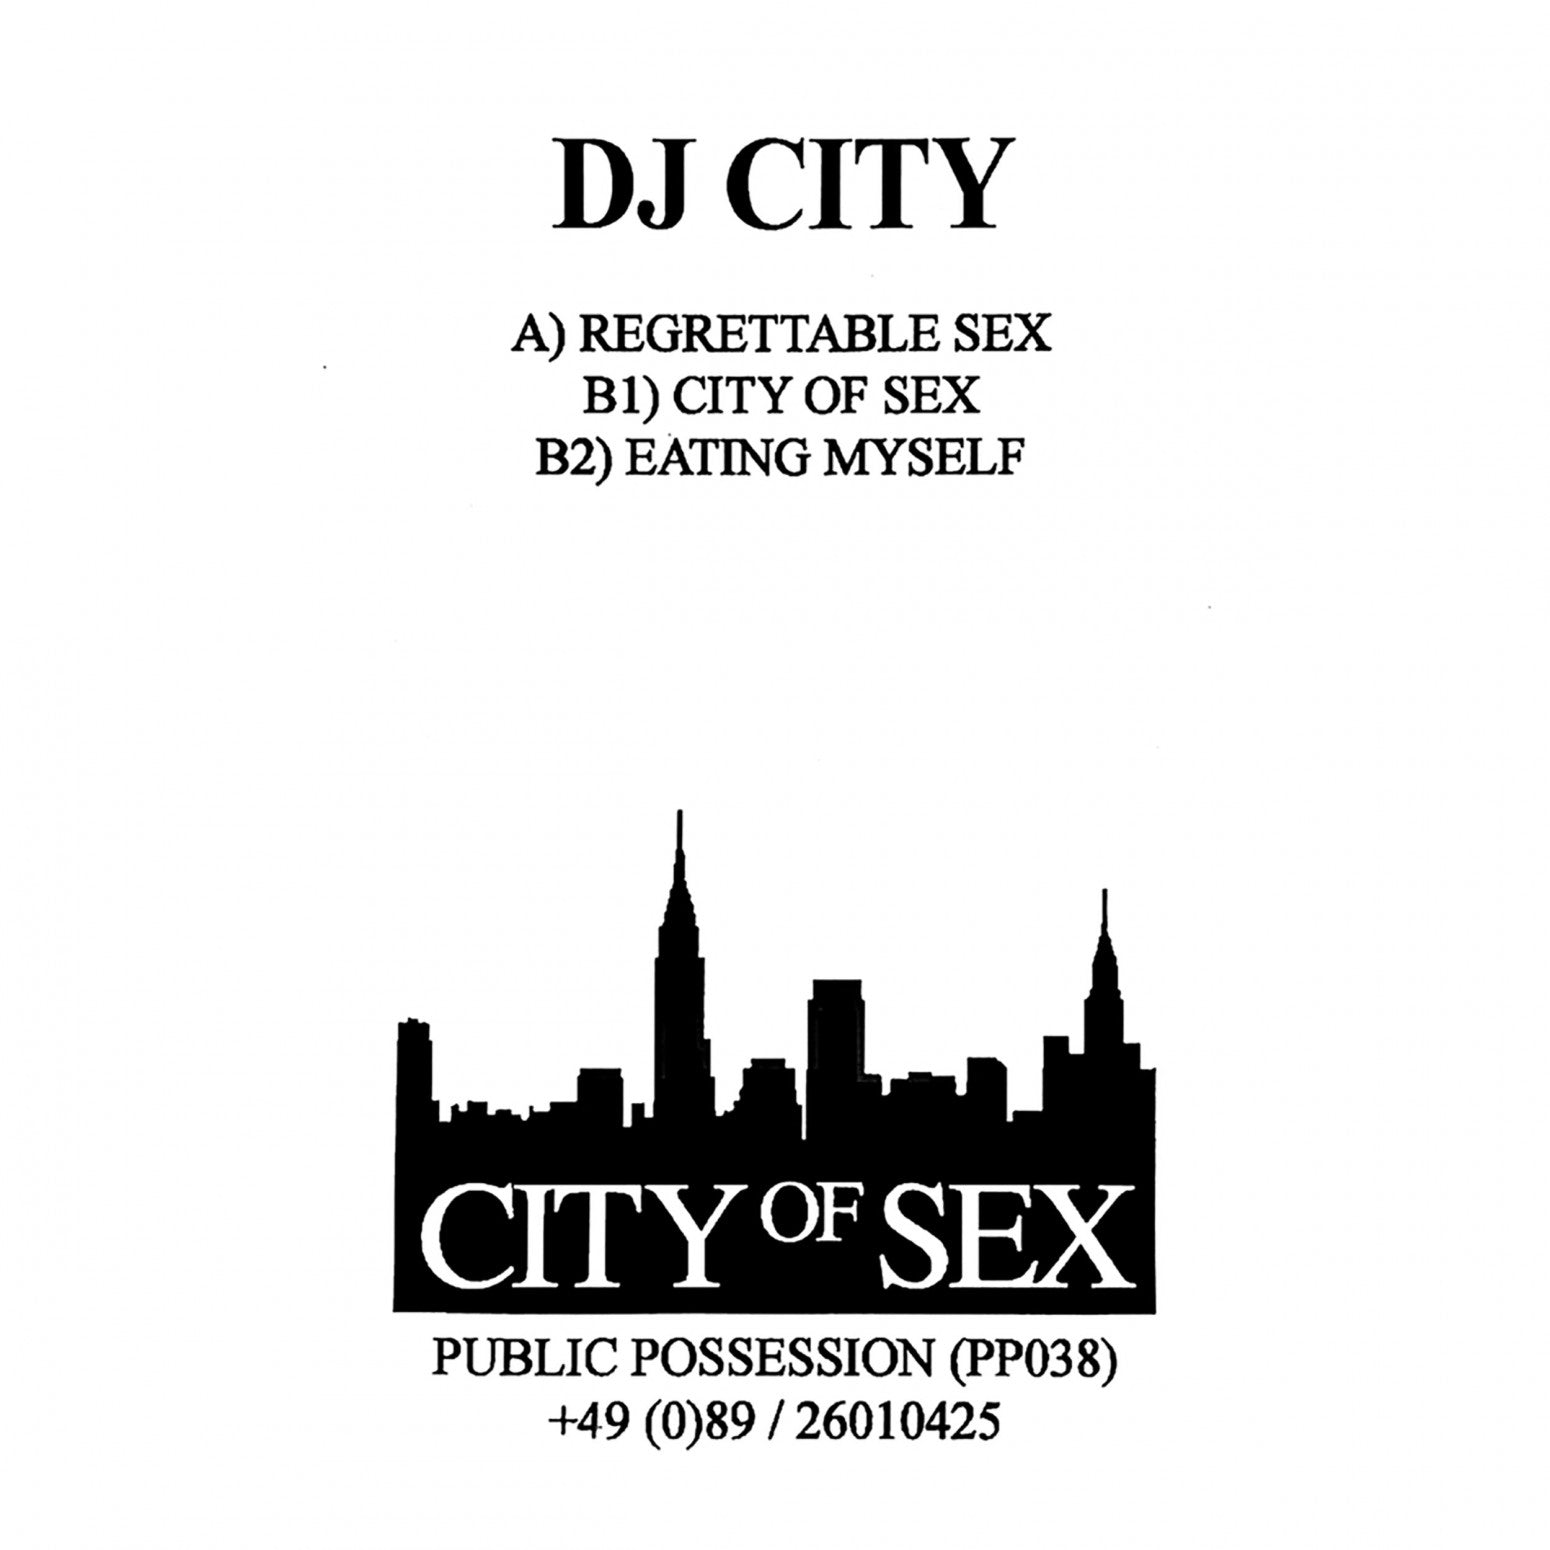 City of Sex - DJ City 12”